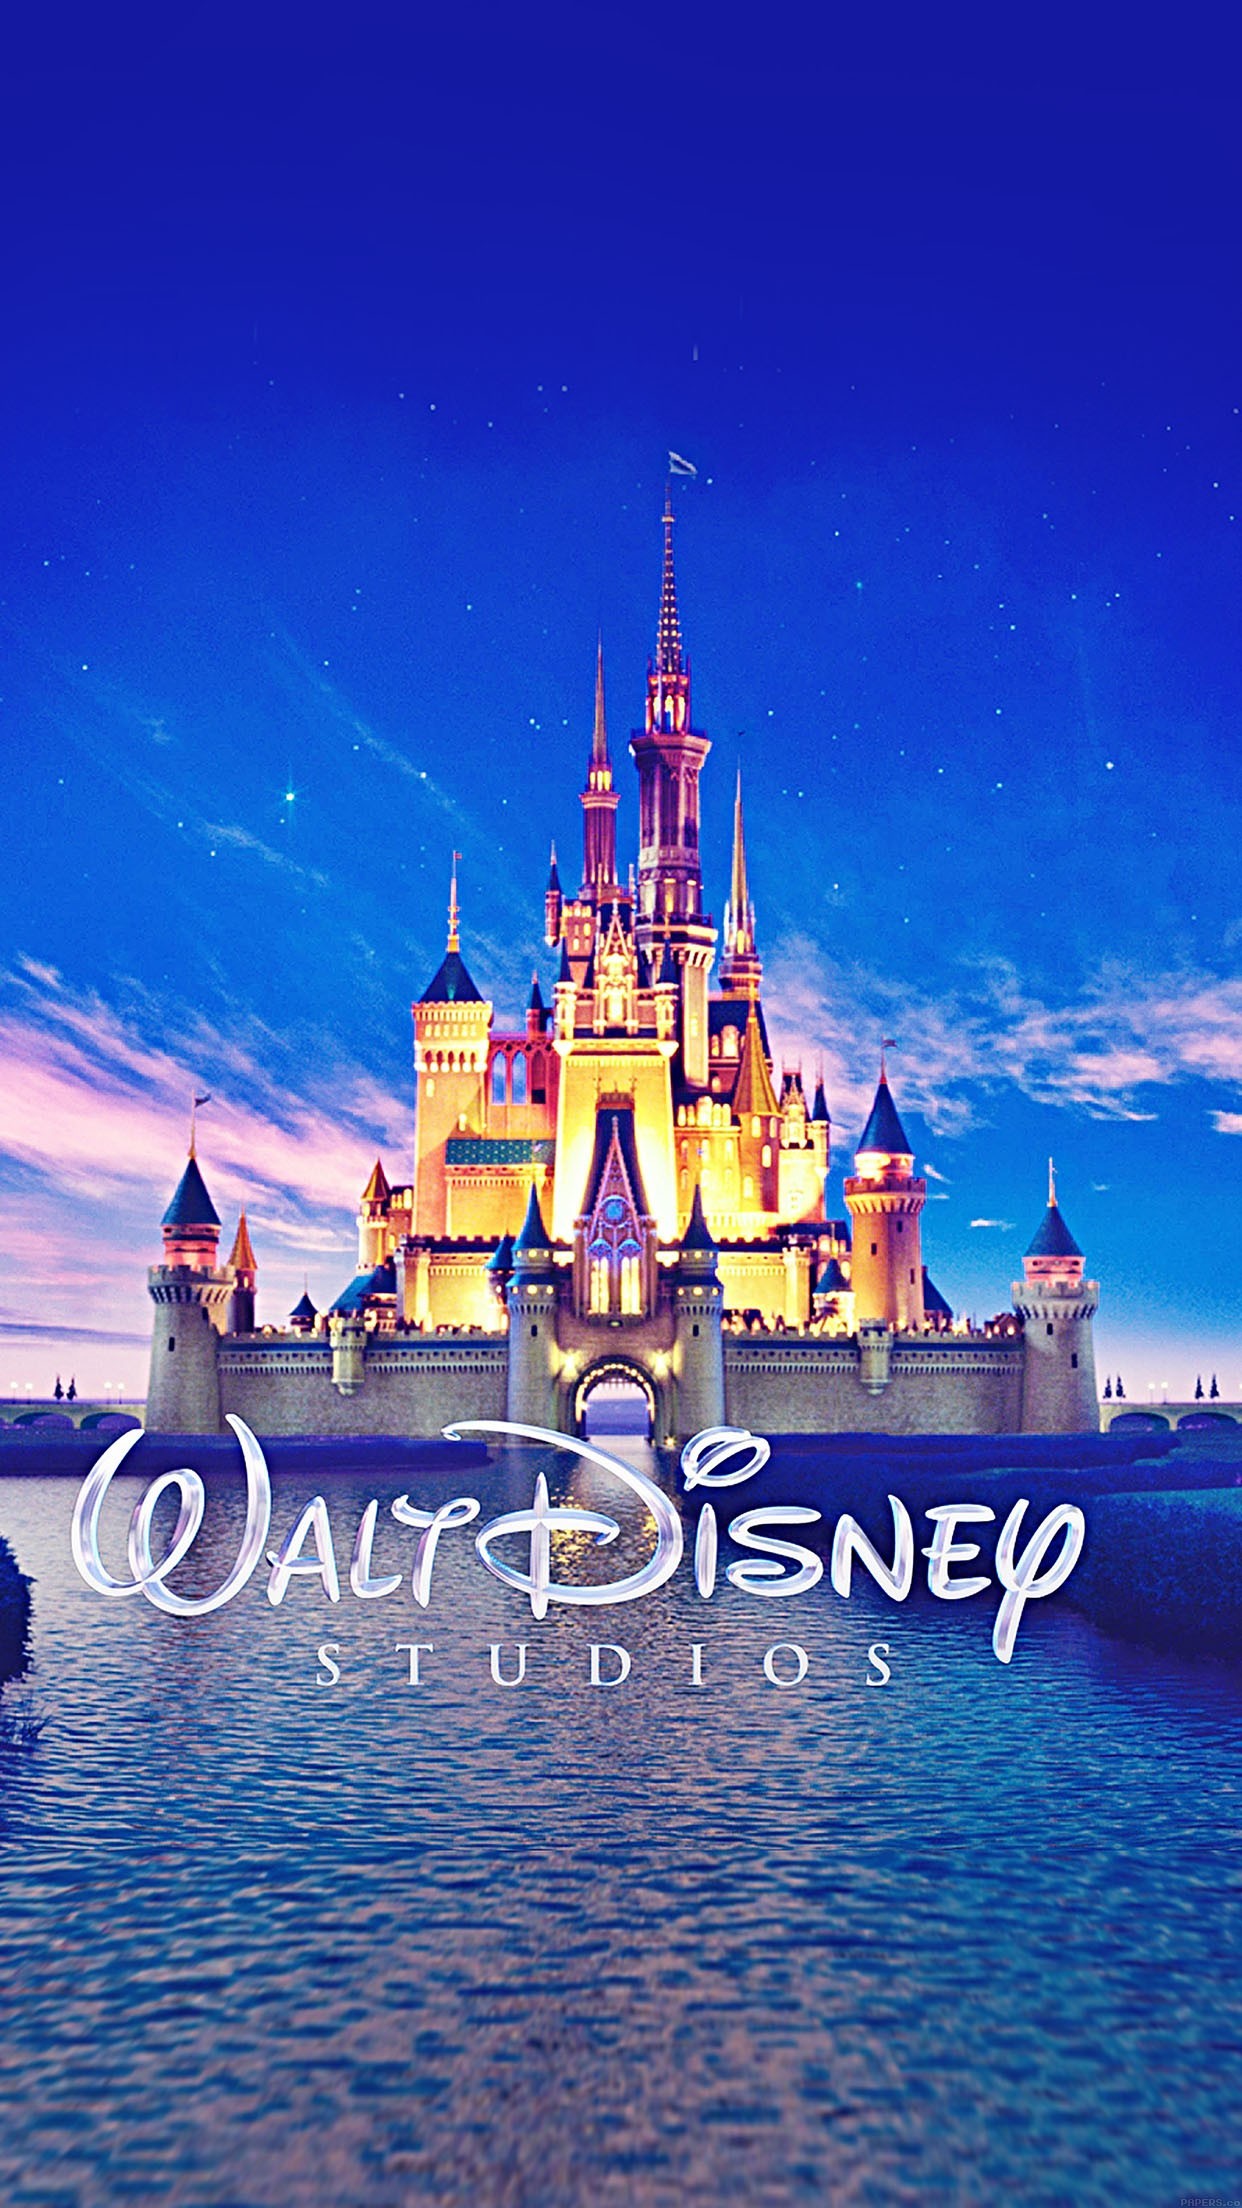 Khám phá lâu đài Disney đầy mơ mộng, nơi mà những nhân vật hoạt hình thanh tú, y như thật, chờ đón bạn đến tham quan. Bạn sẽ được chiêm ngưỡng kiến trúc độc đáo và tận hưởng cảm giác bước vào một thế giới cổ tích. Hãy nhấp chuột để khám phá sự thần tiên của lâu đài Disney.